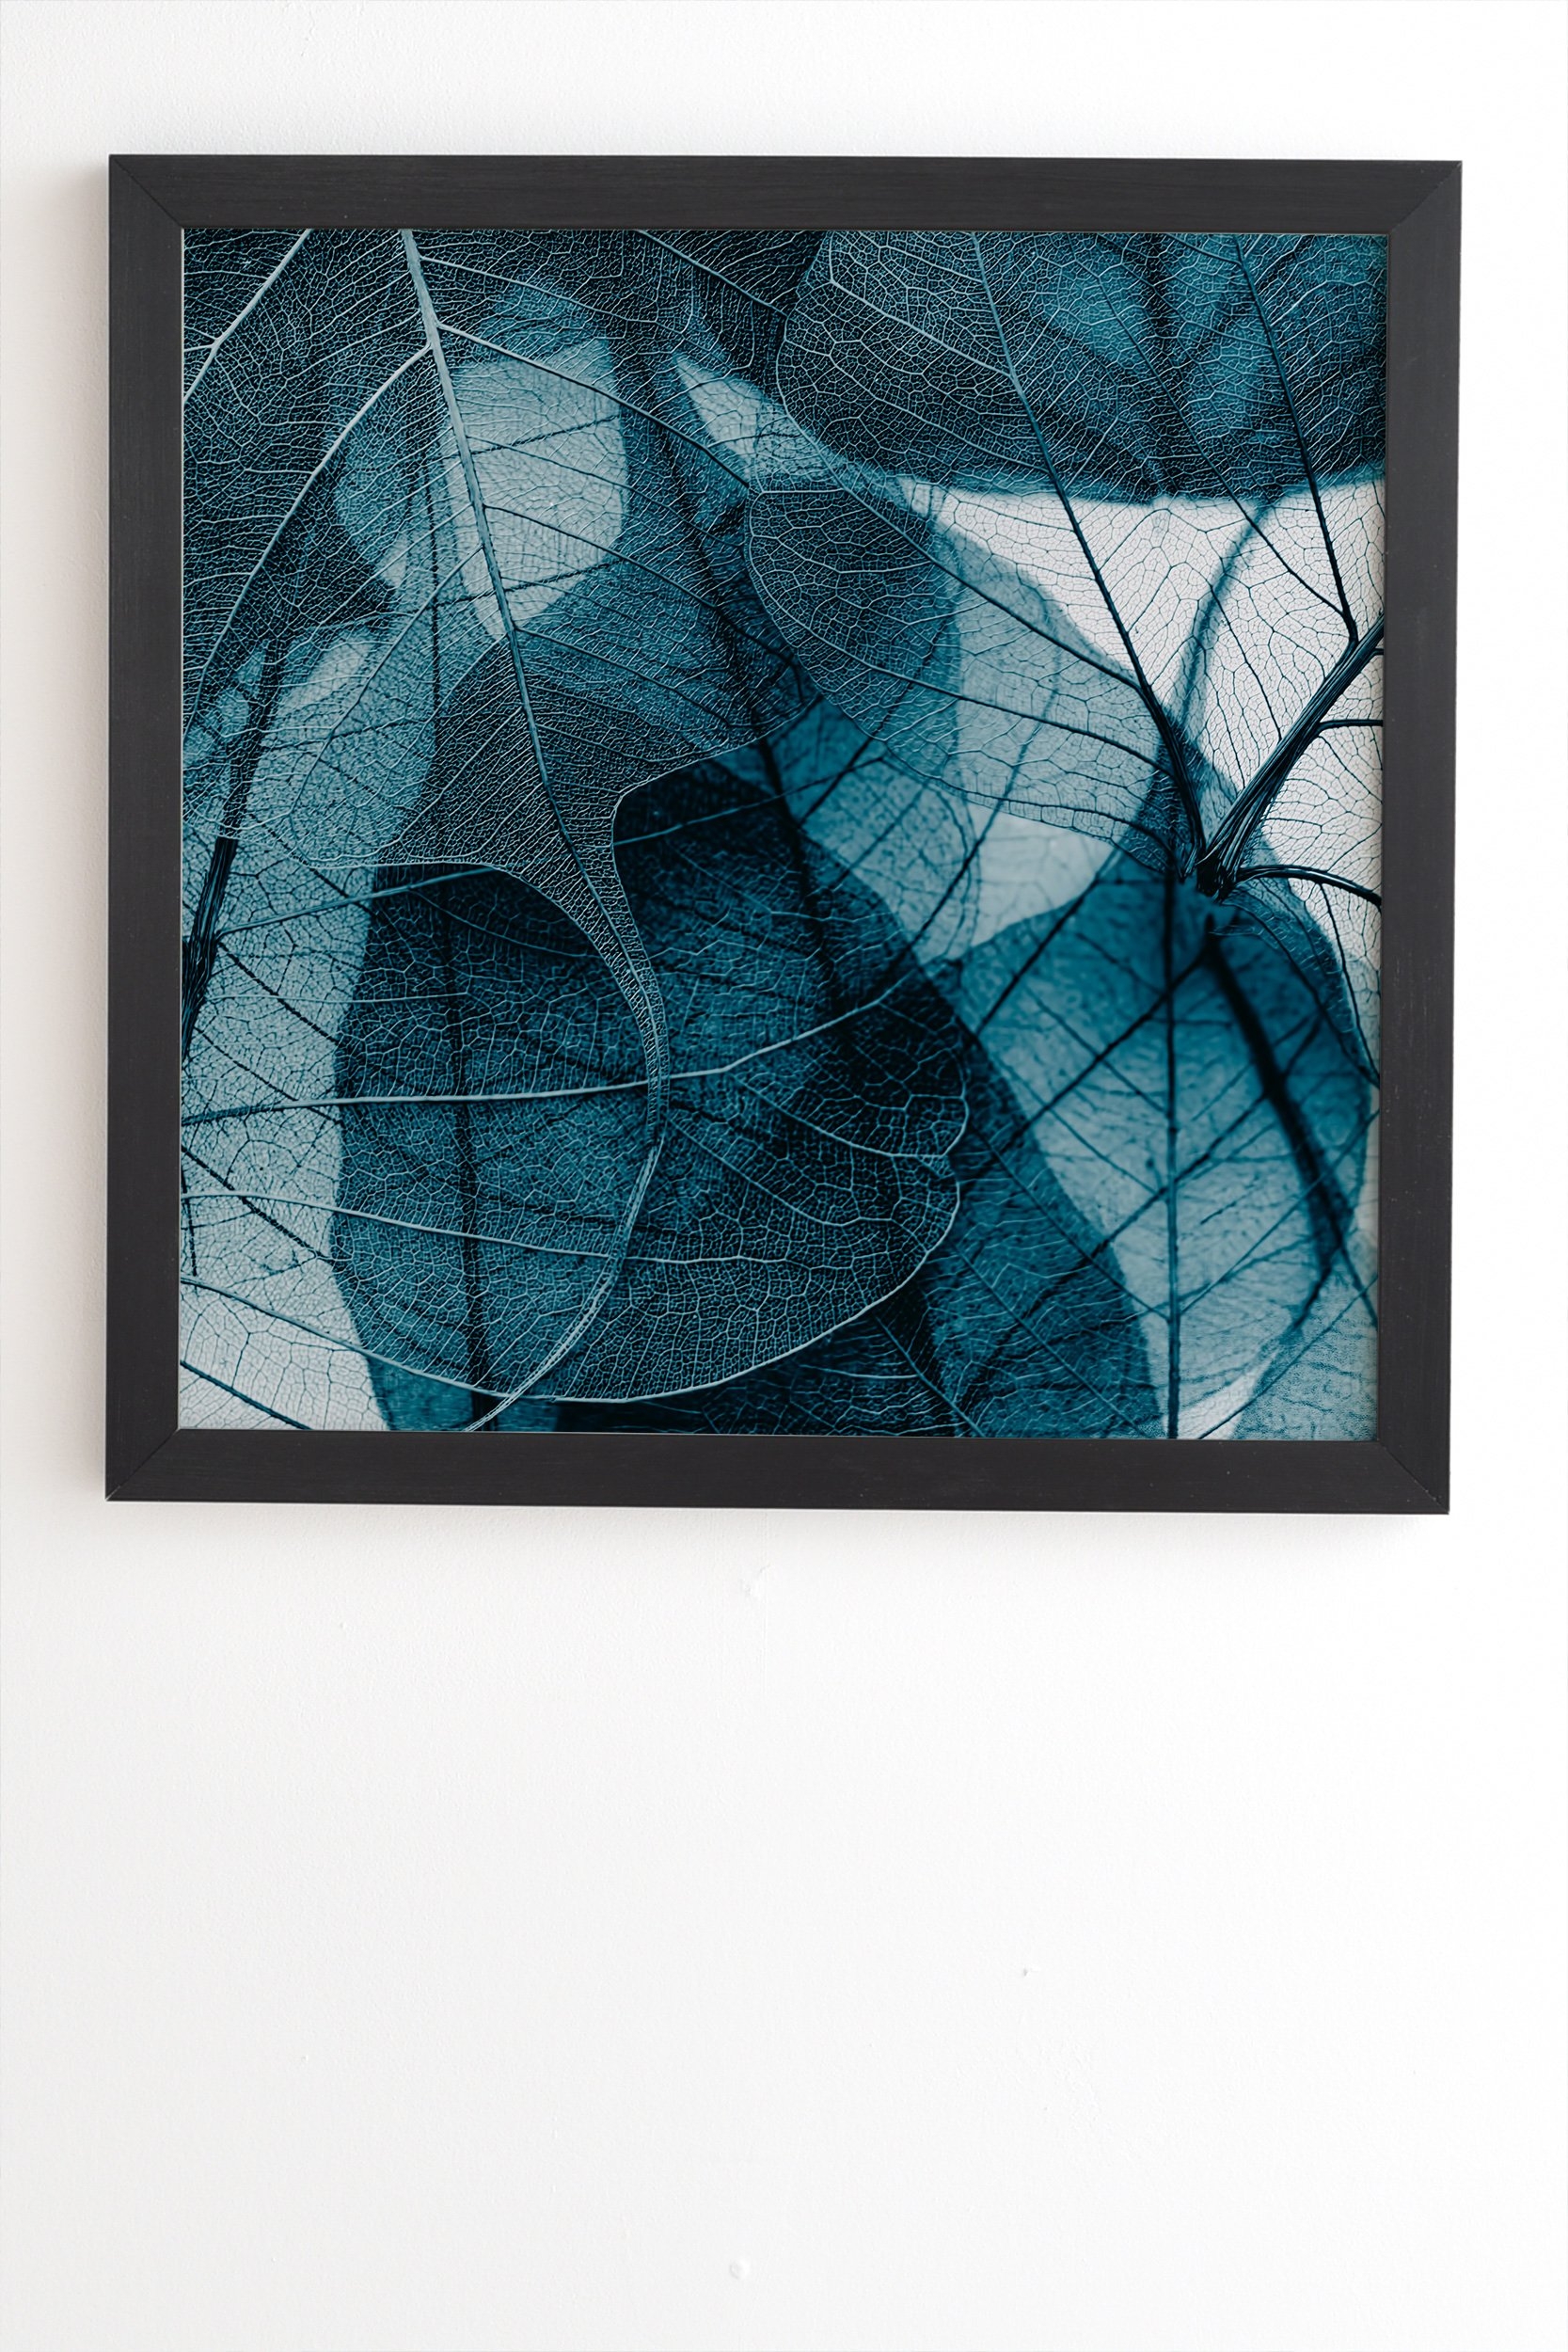 Ingrid Beddoes Denim blue Black Framed Wall Art - 19" x 22.4" - Image 1